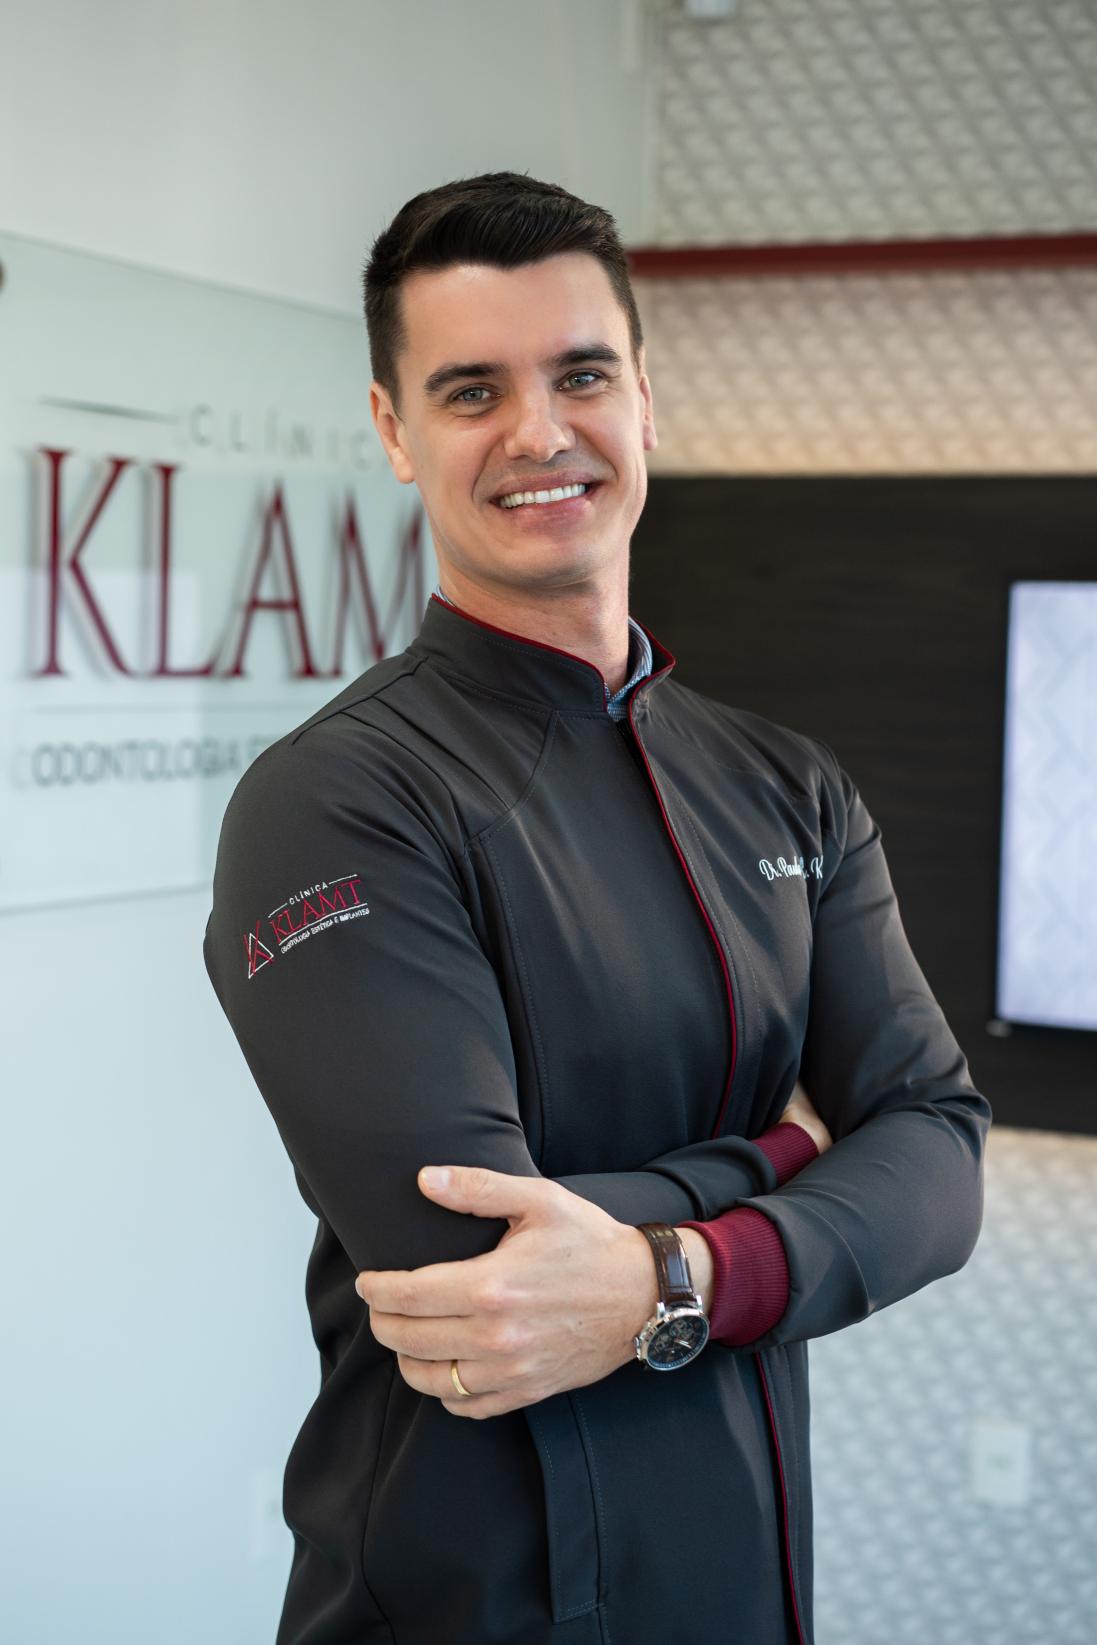 Dr. Paulo Ricardo Klamt - Especialista em Implantodontia, Ortodontia e Ortopedia Facial.